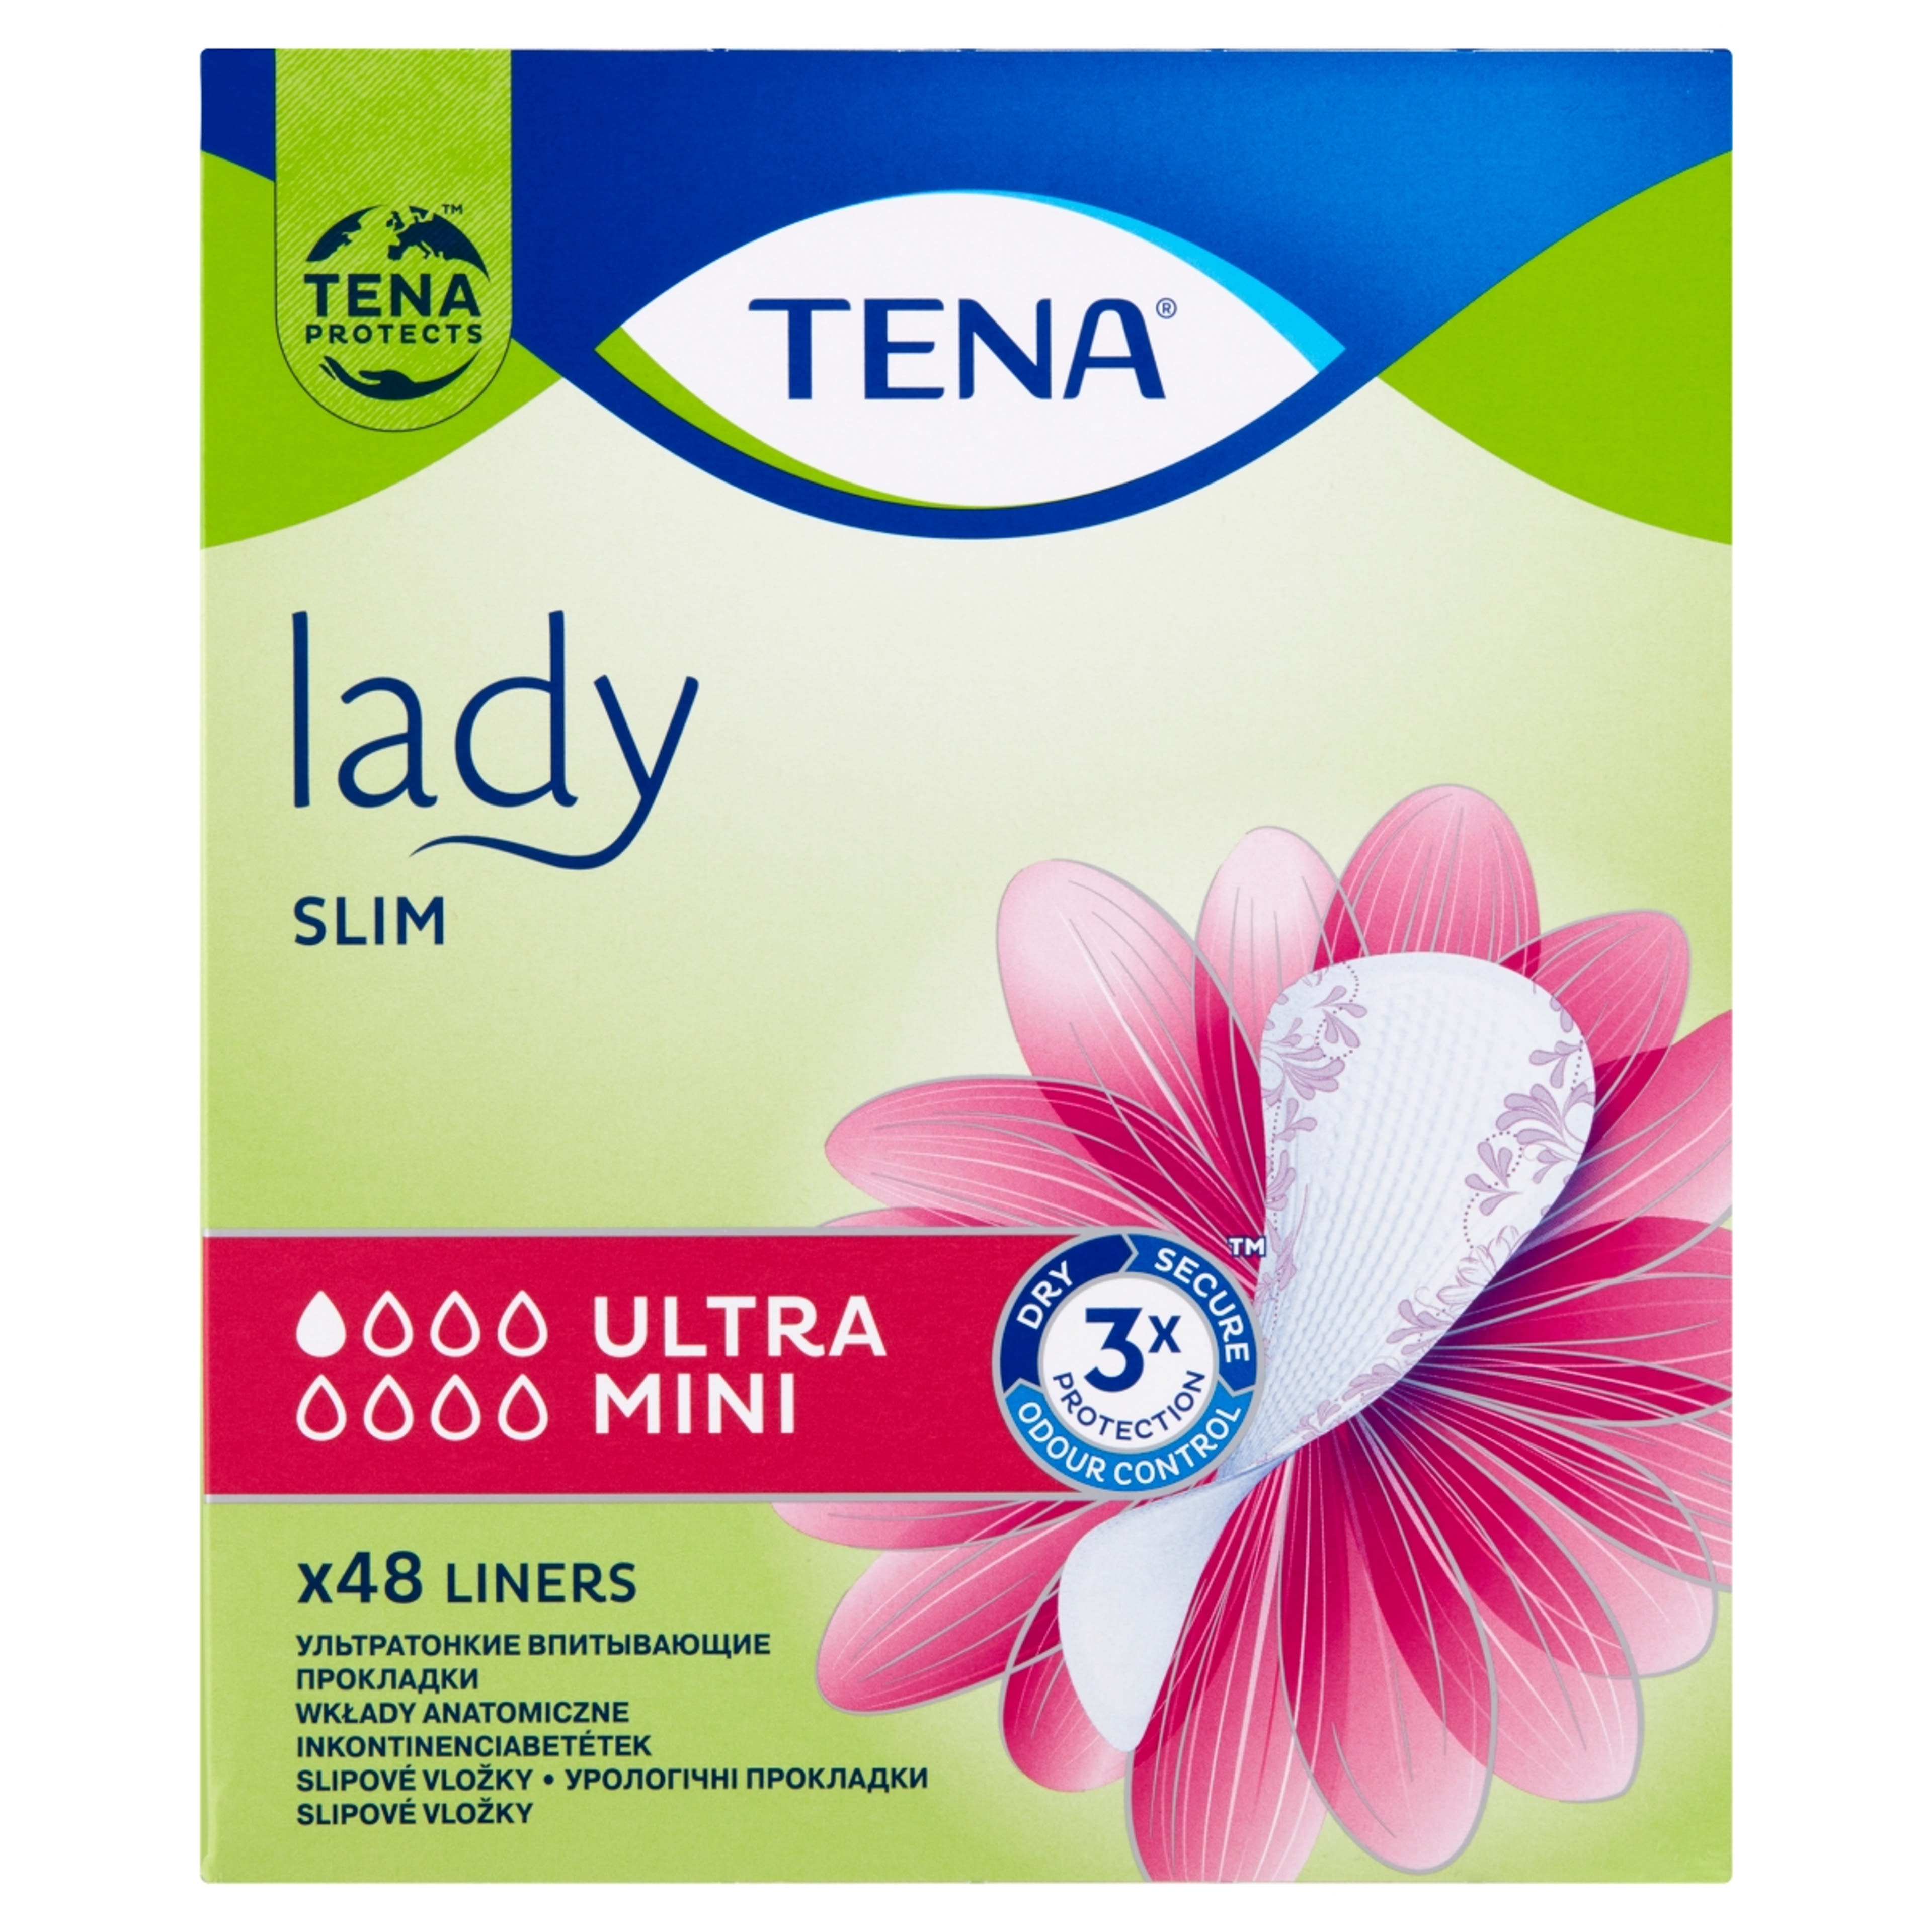 Tena Lady inkontinencia betét ultra mini slim - 1 db